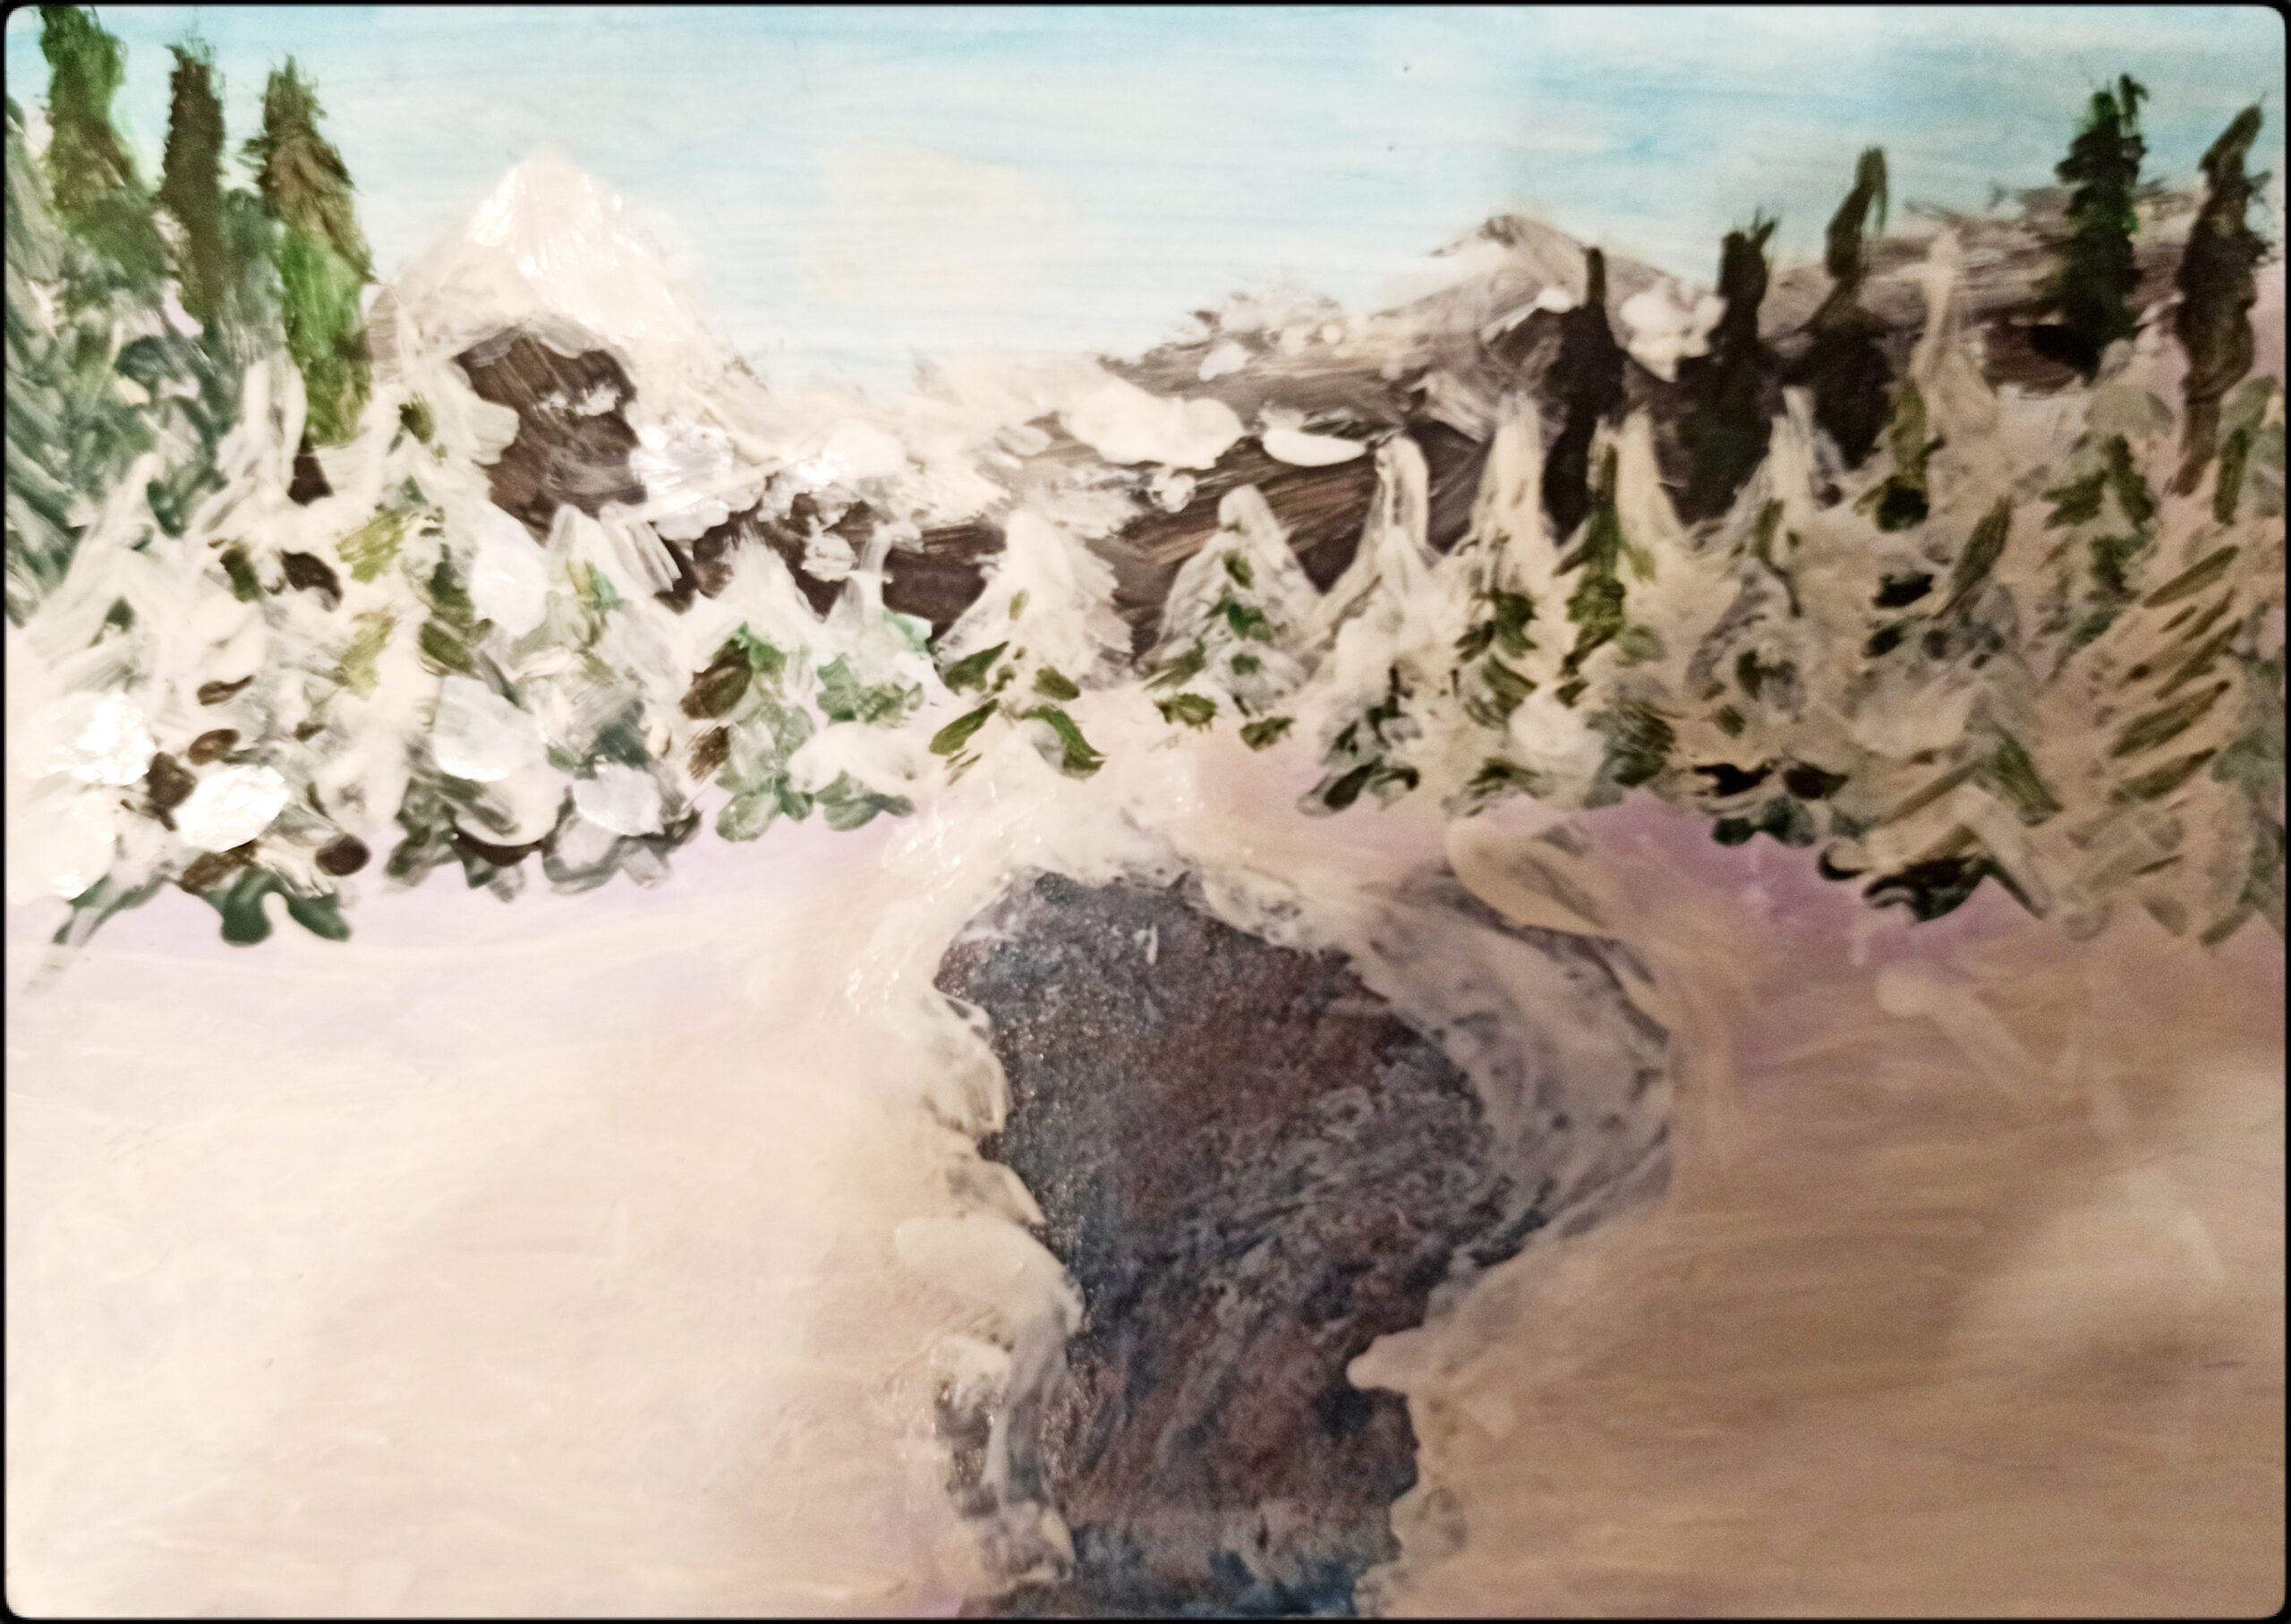 Zimowy krajobraz – wystawa prac